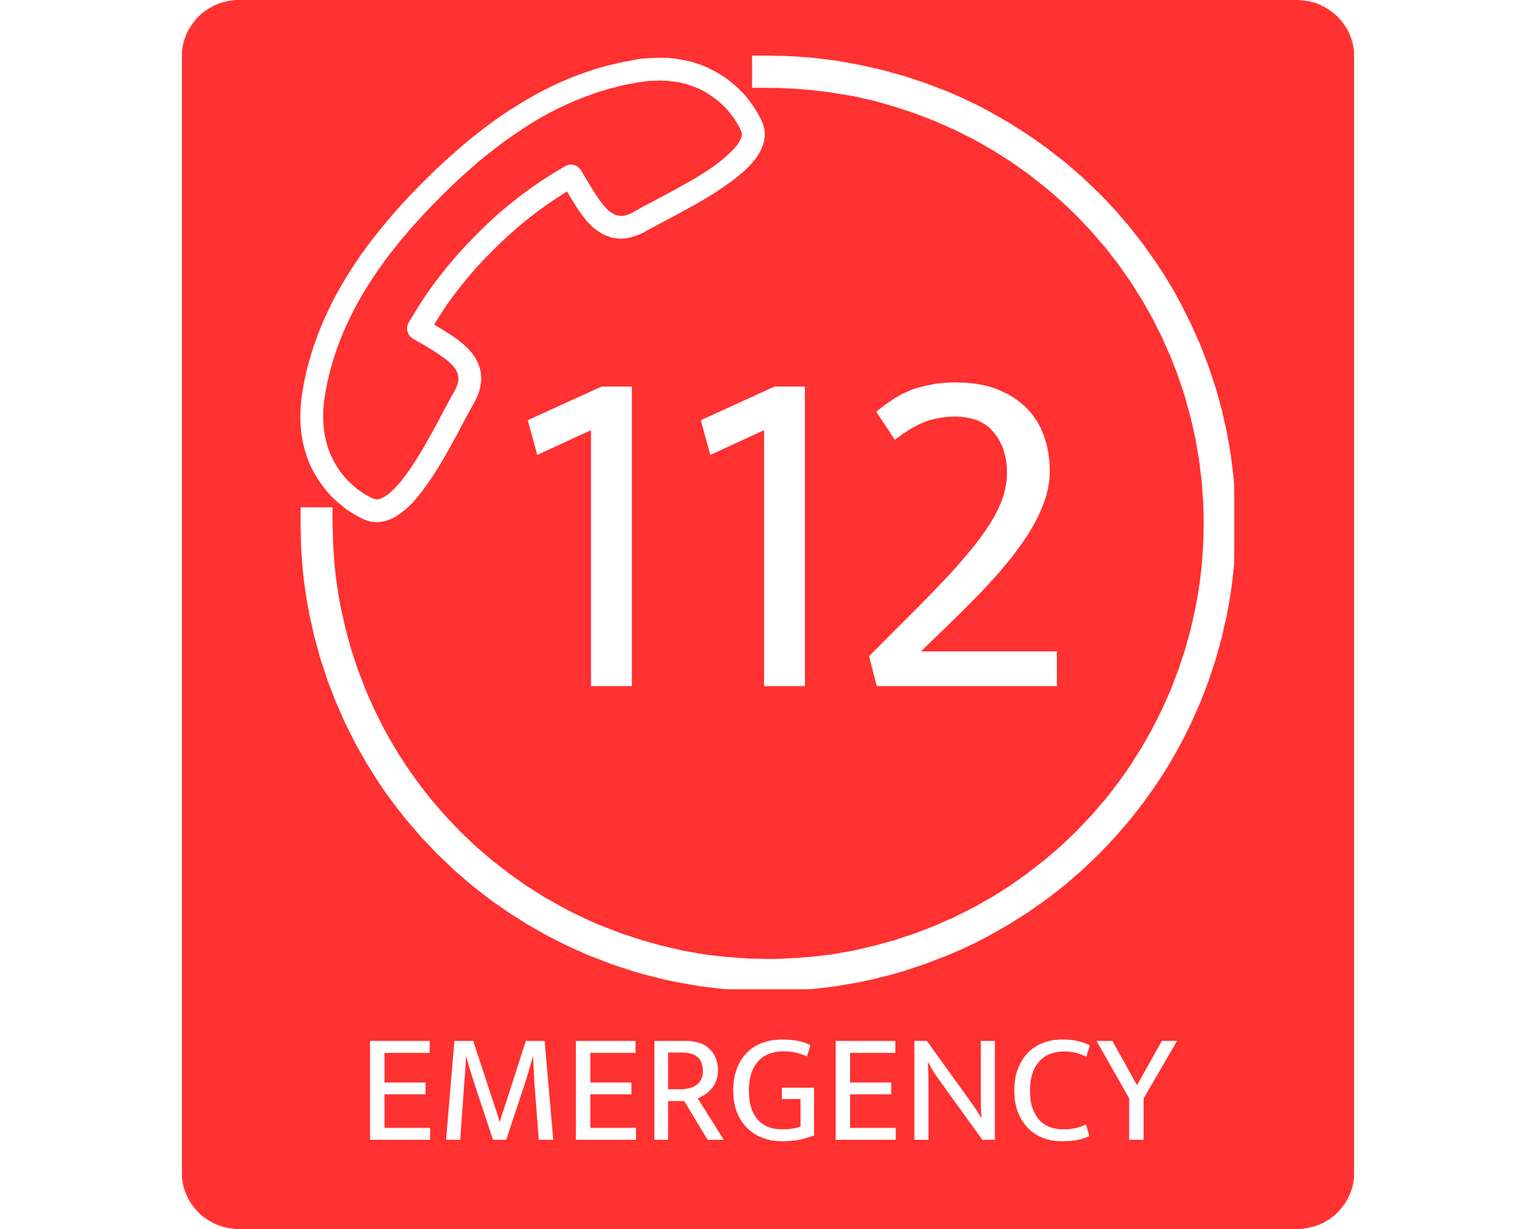 Euro chamada de emergência 112